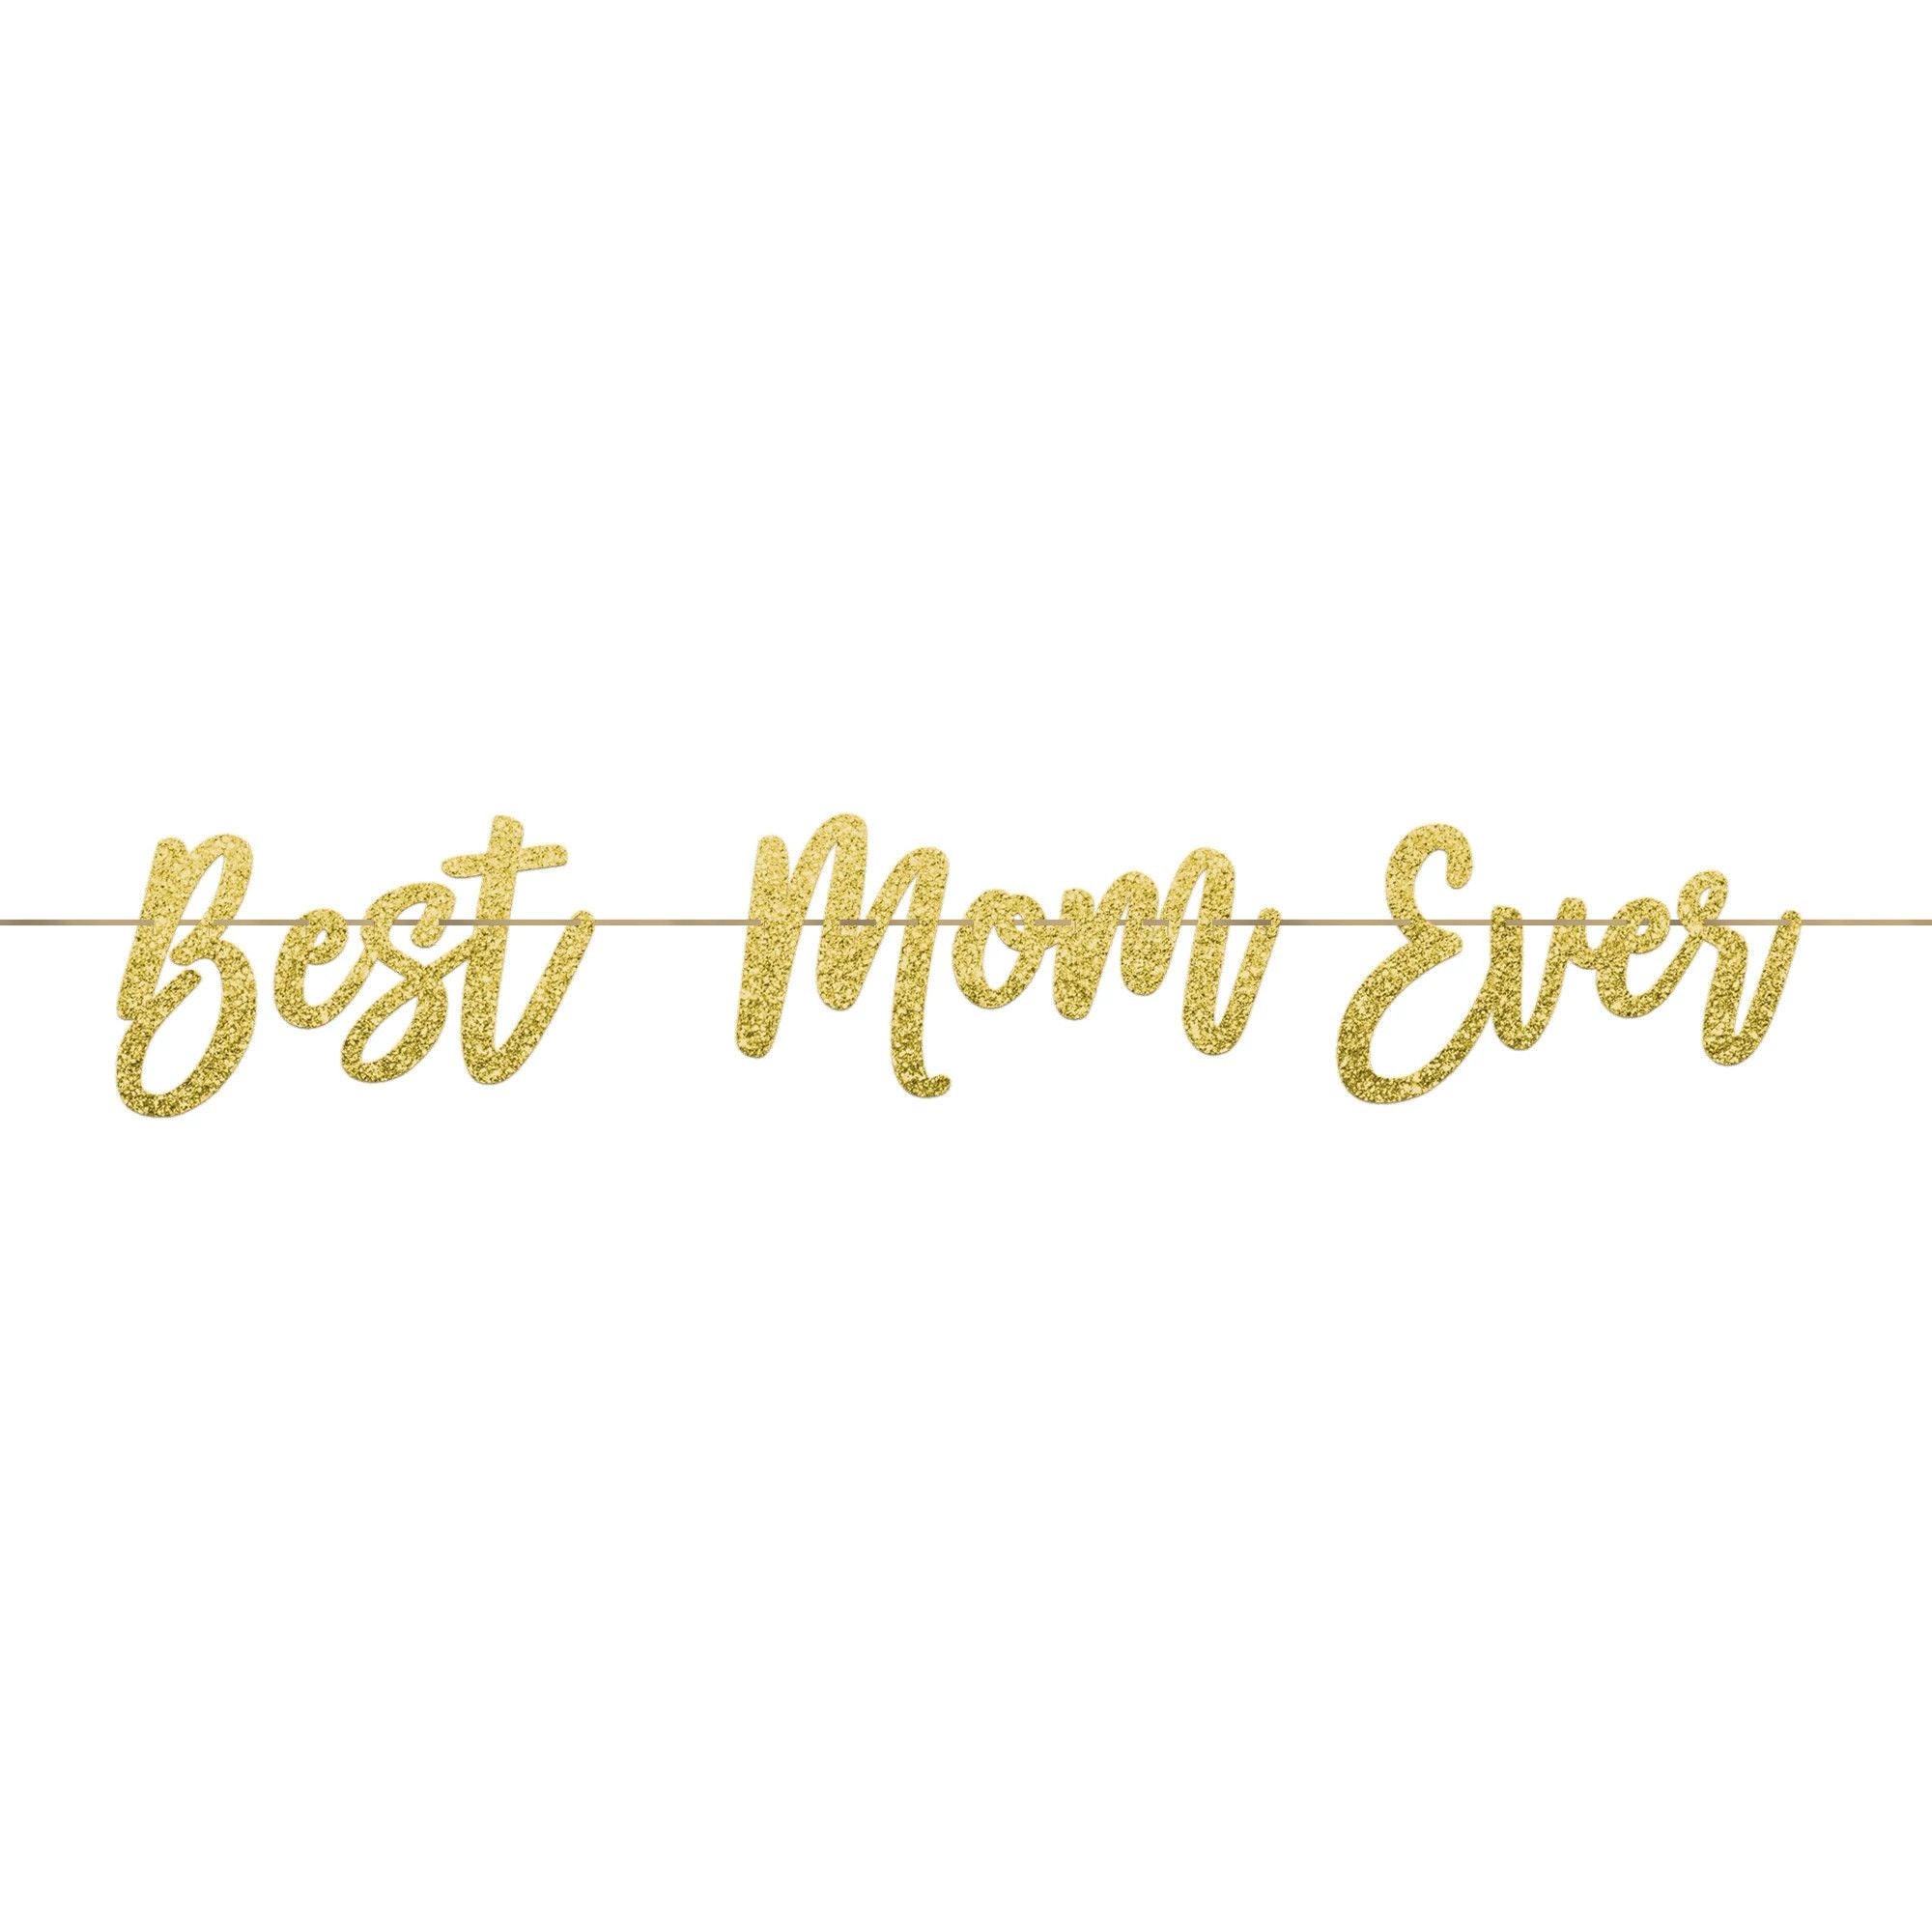 Best Mom Ever Ribbon Letter Banner